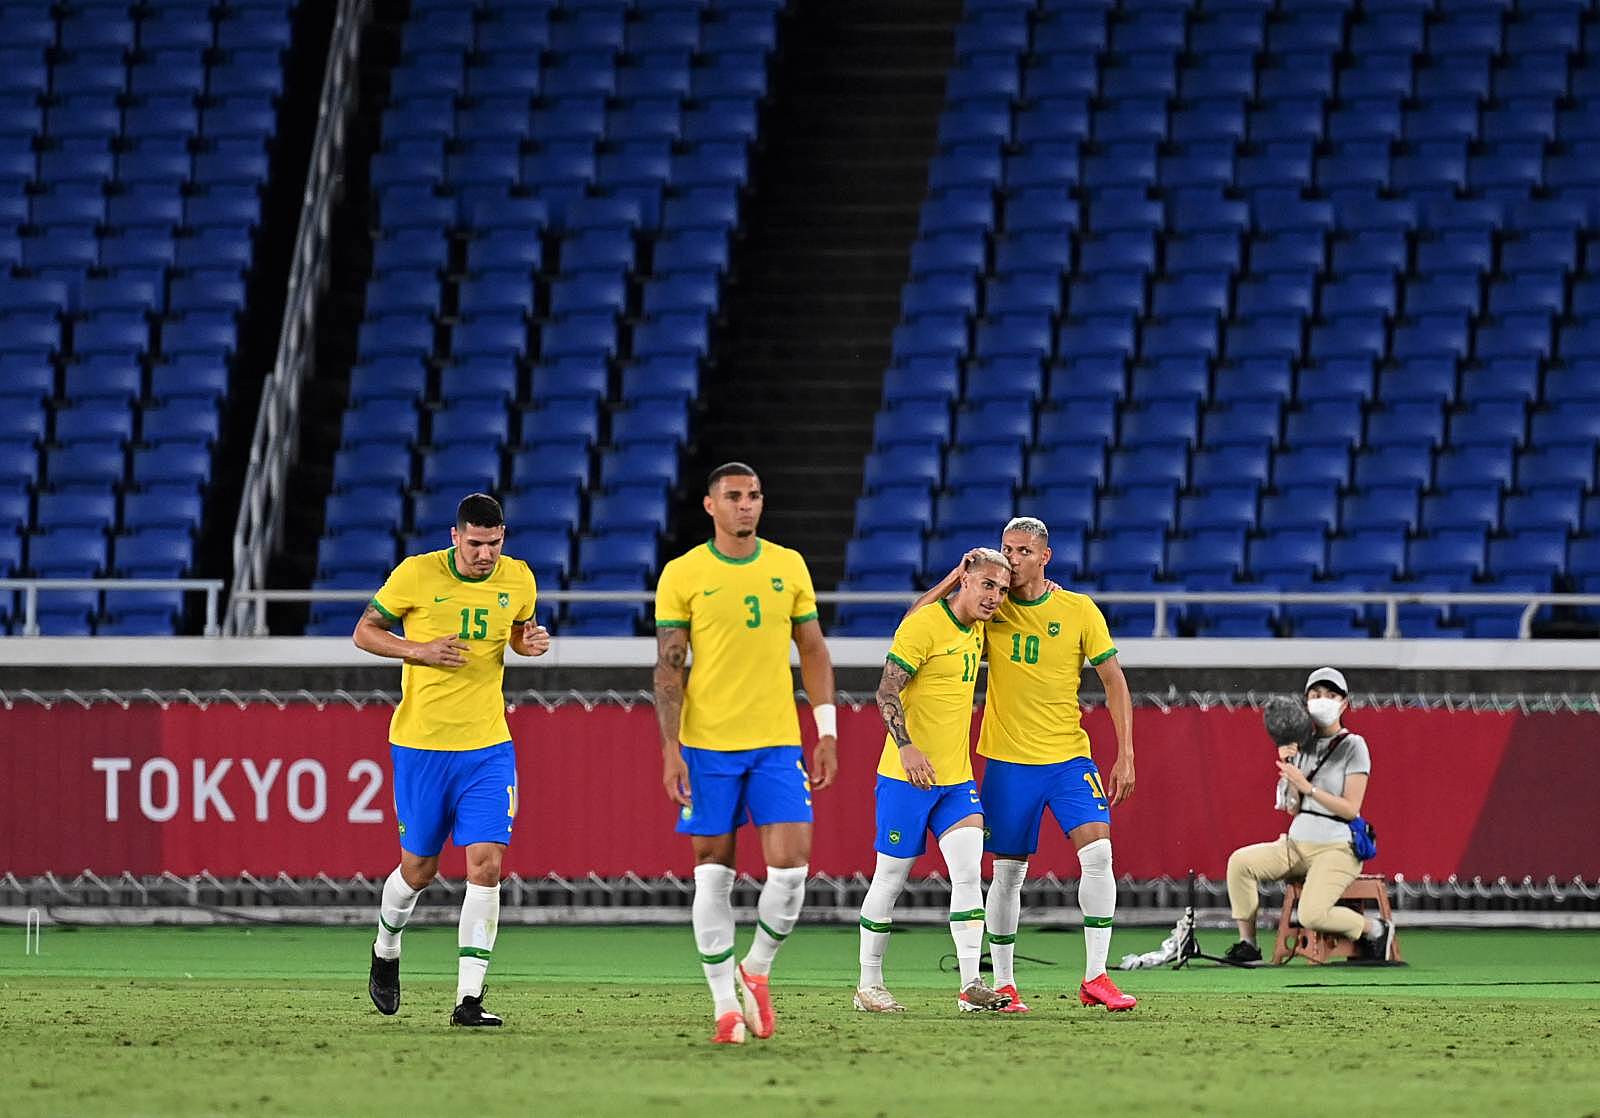 Бразилия отпраздновала волевую победу над Венесуэлой